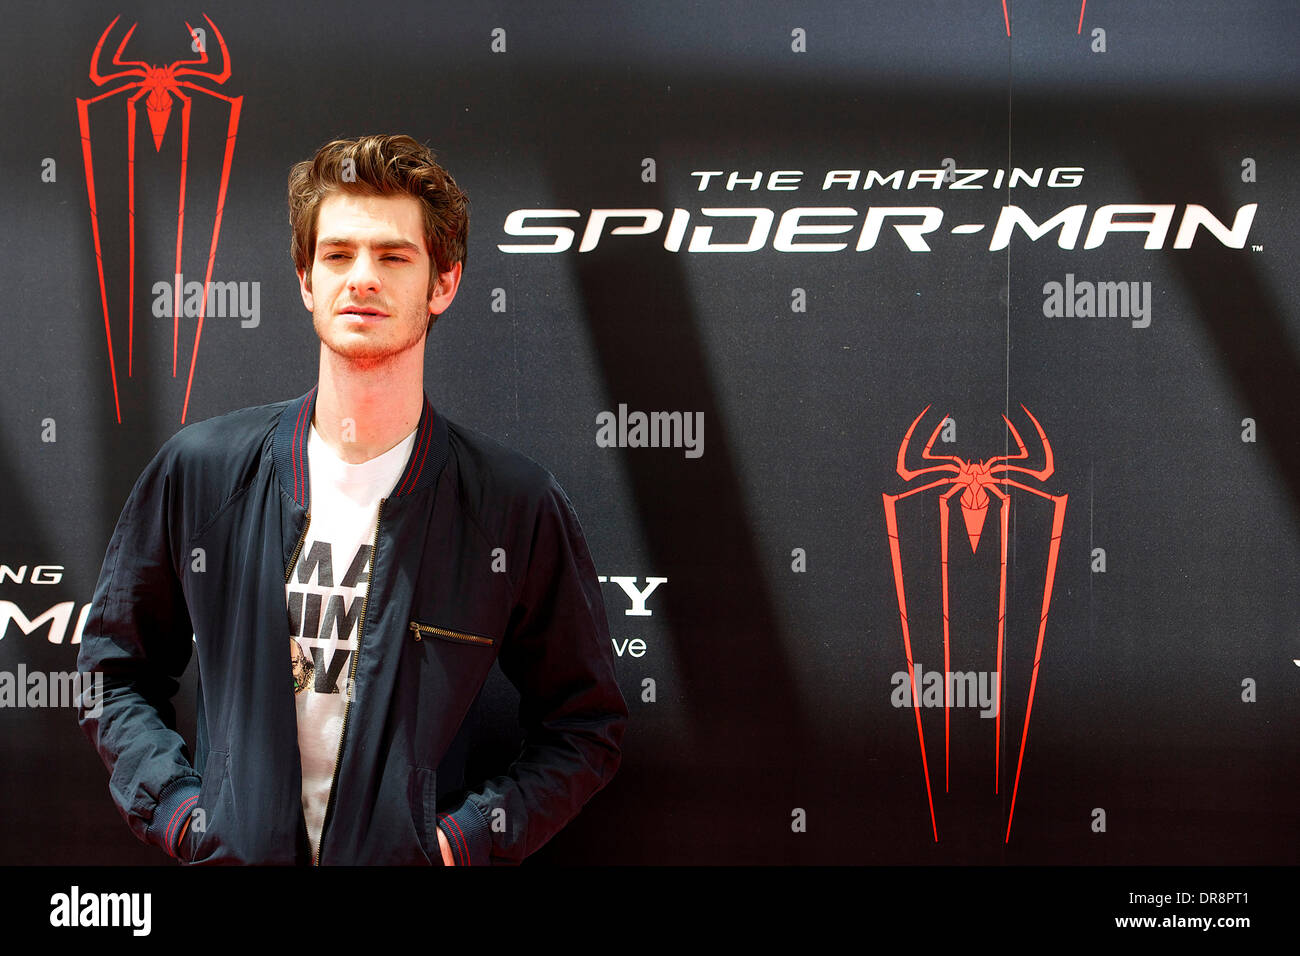 Andrew Garfield Fototermin von "The Amazing Spider-Man" an Villamagna Hotel Madrid, Spanien - 21.06.12 Stockfoto